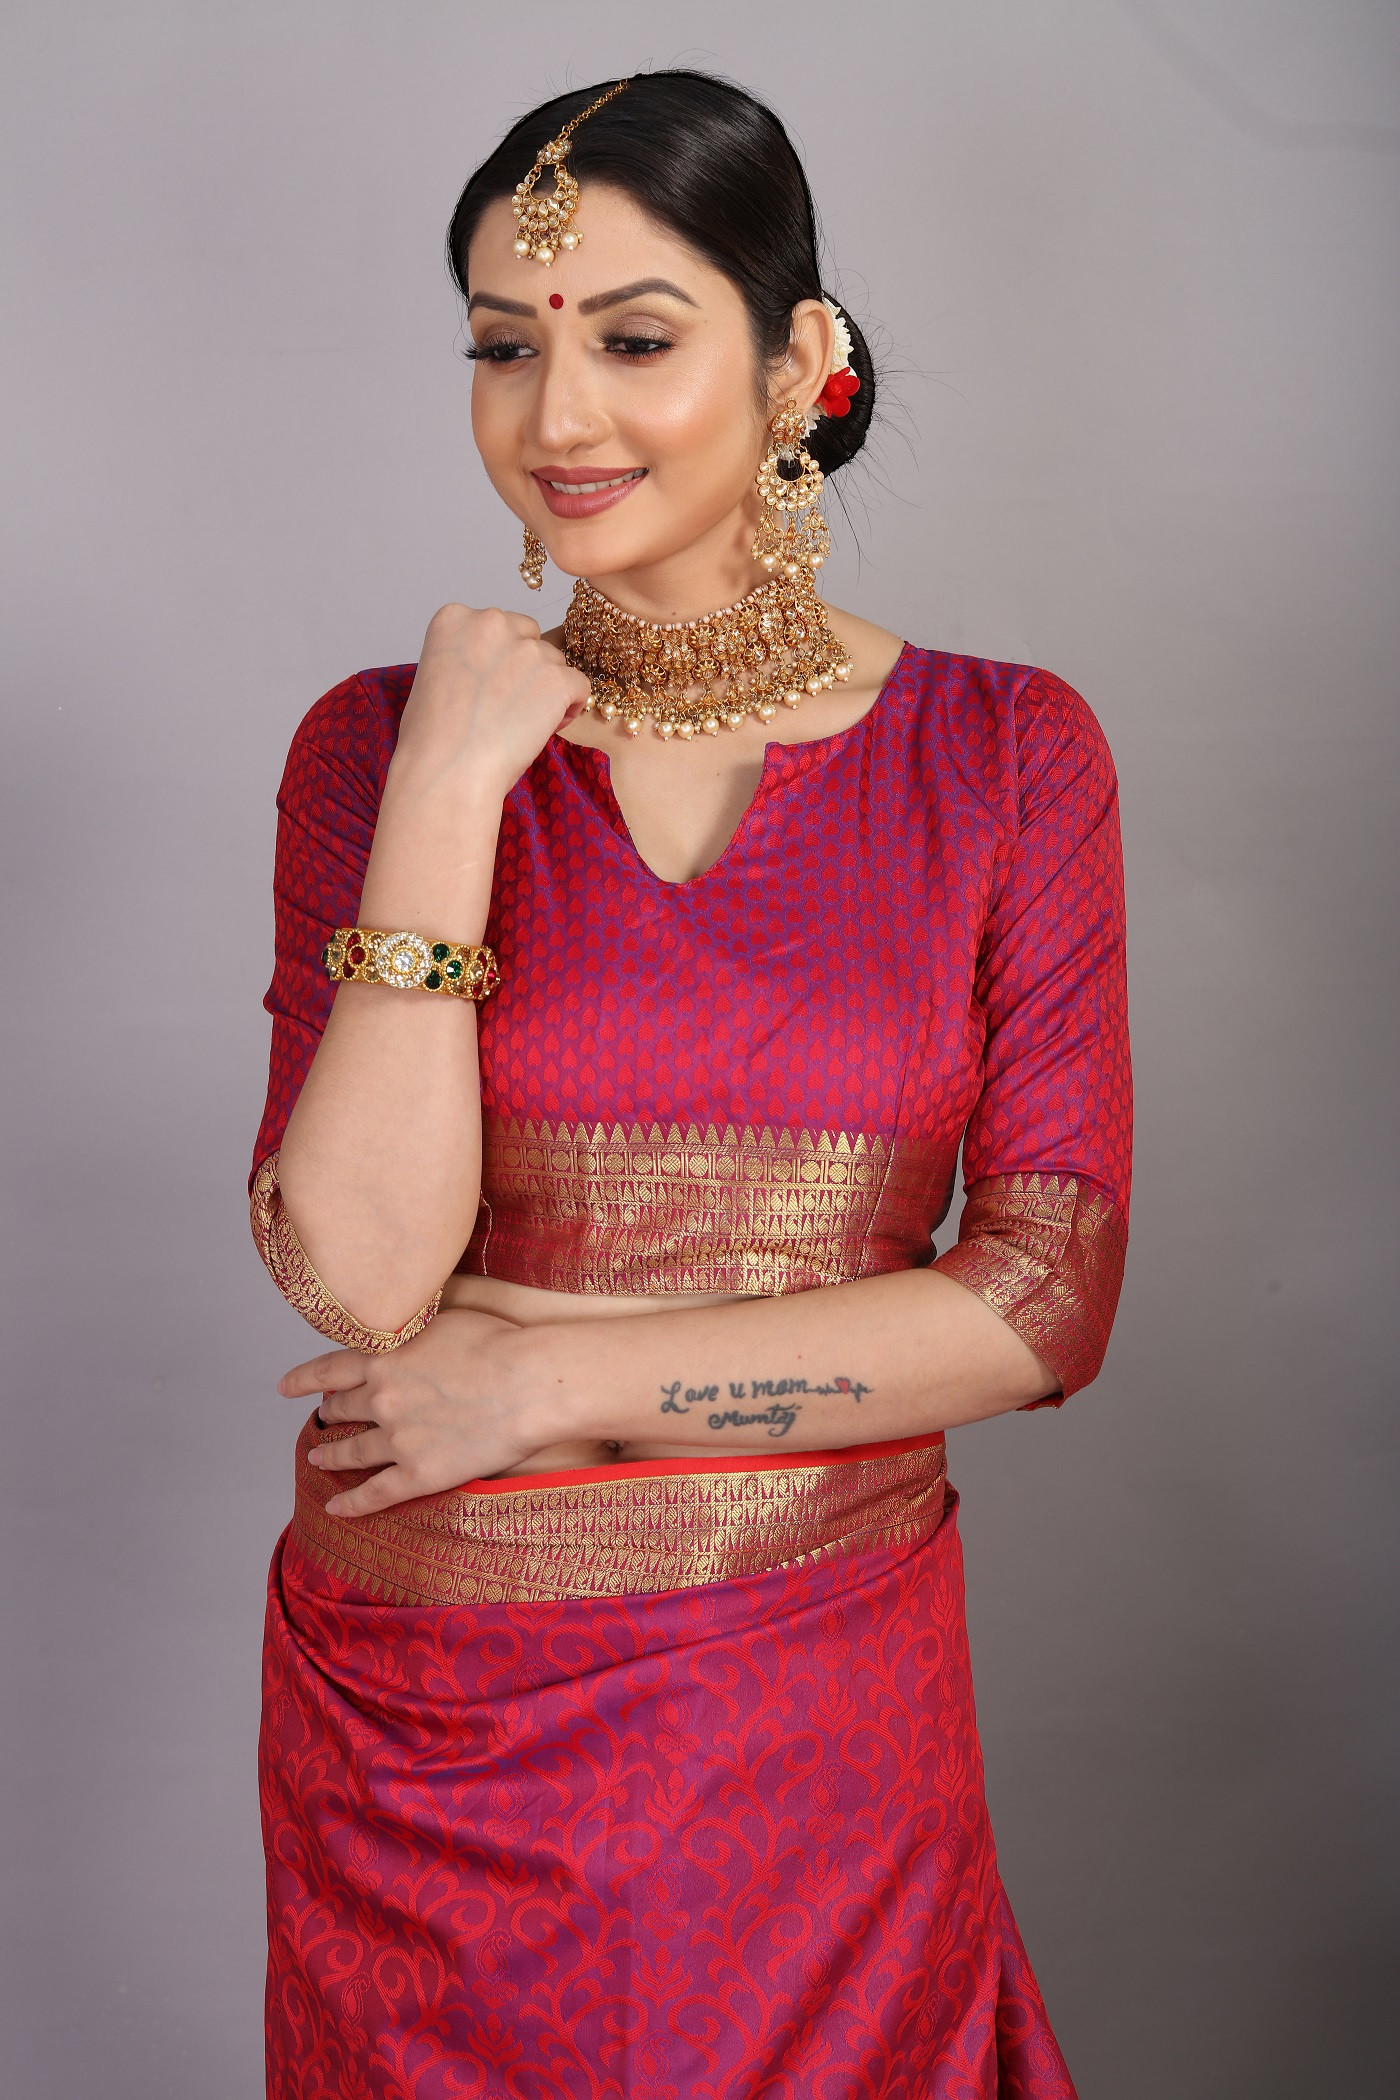 Tansui Silk saree with Gold zari woven border and rich Pallu - Purple